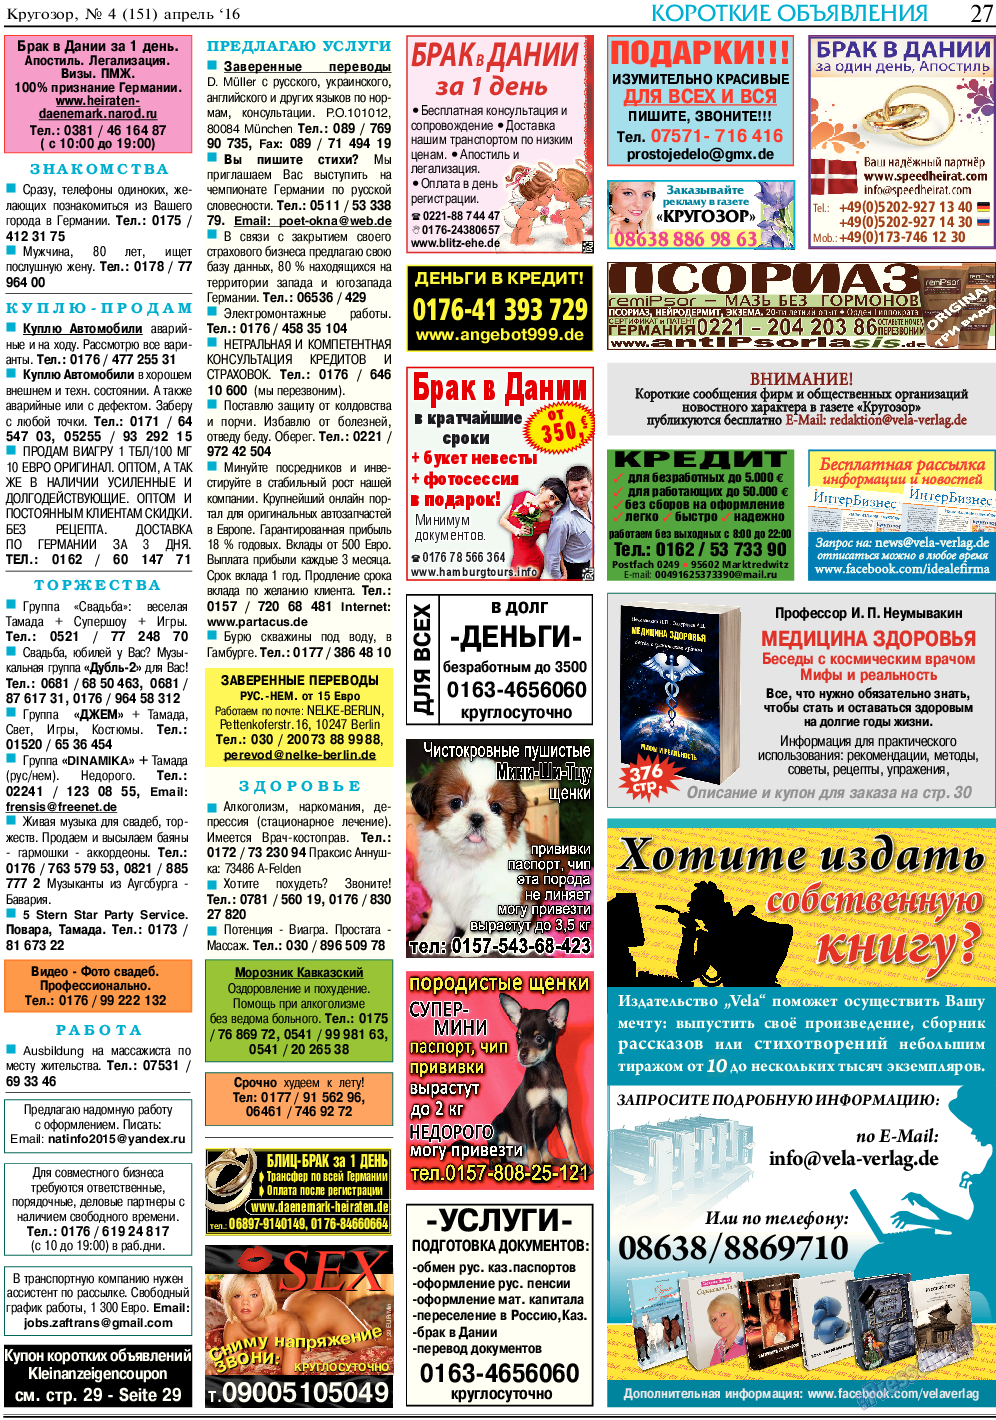 Кругозор (газета). 2016 год, номер 4, стр. 27